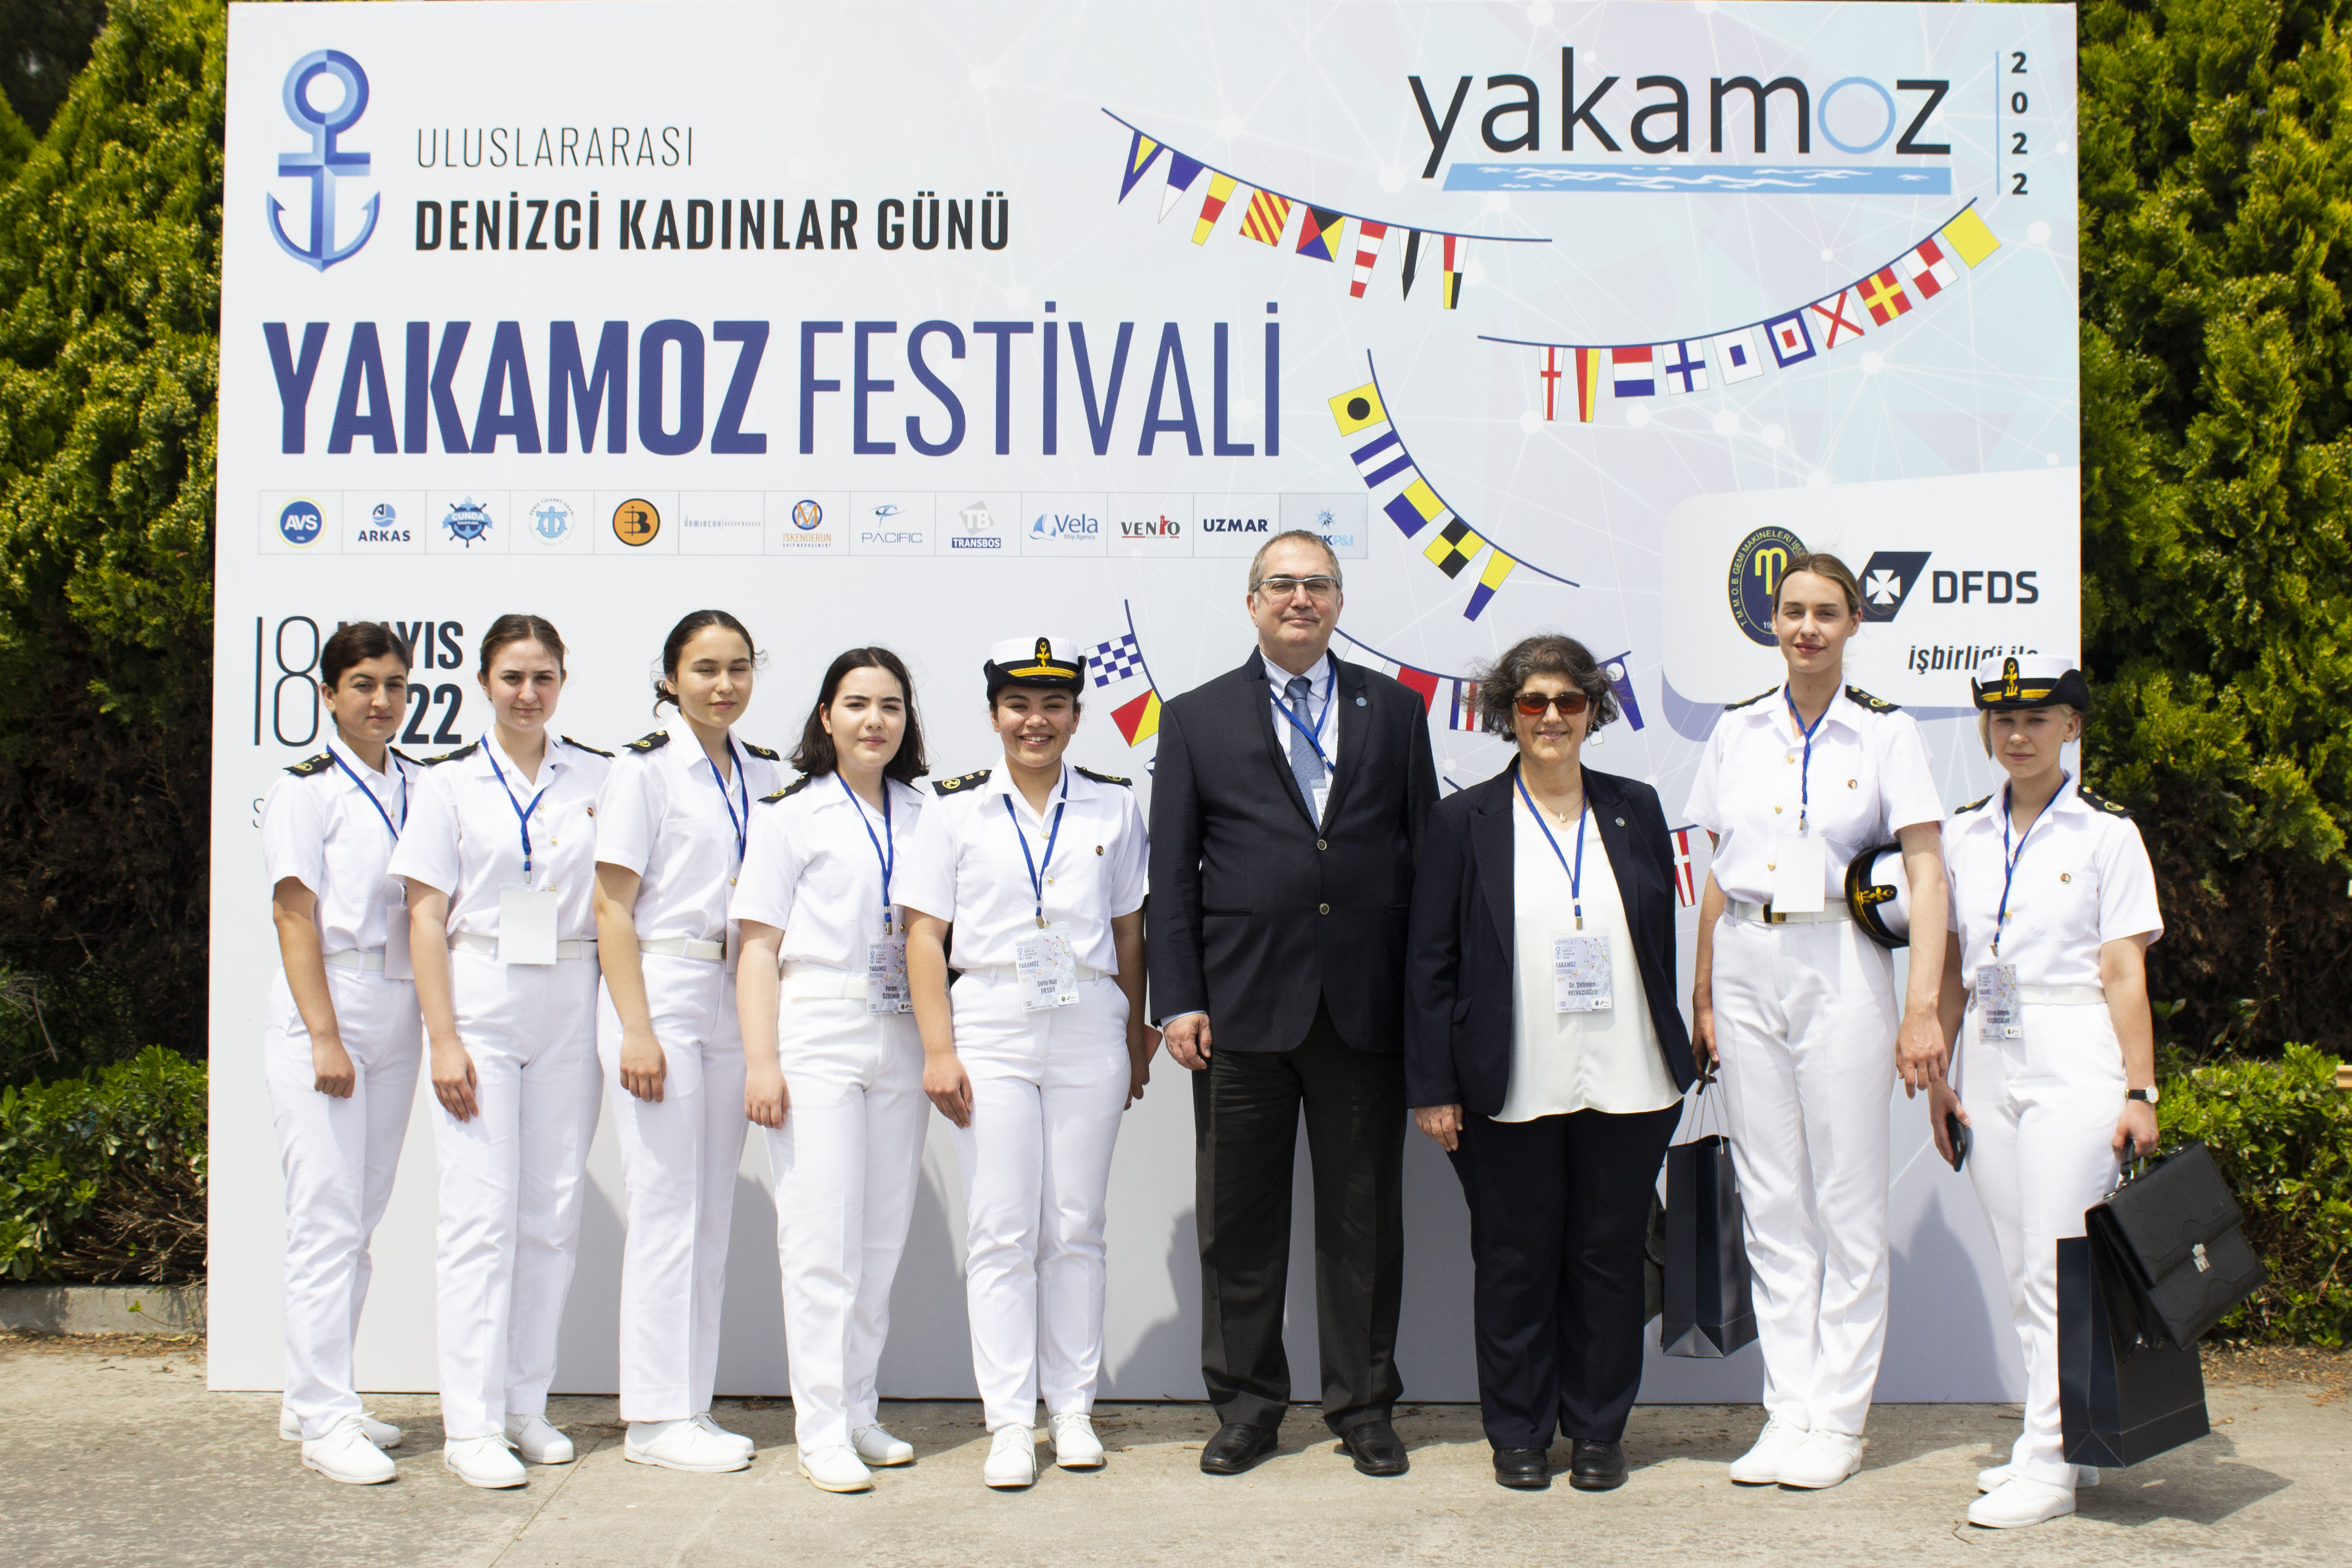 Uluslararası Denizci Kadınlar Günü ''Yakamoz Festivali'' Yapıldı